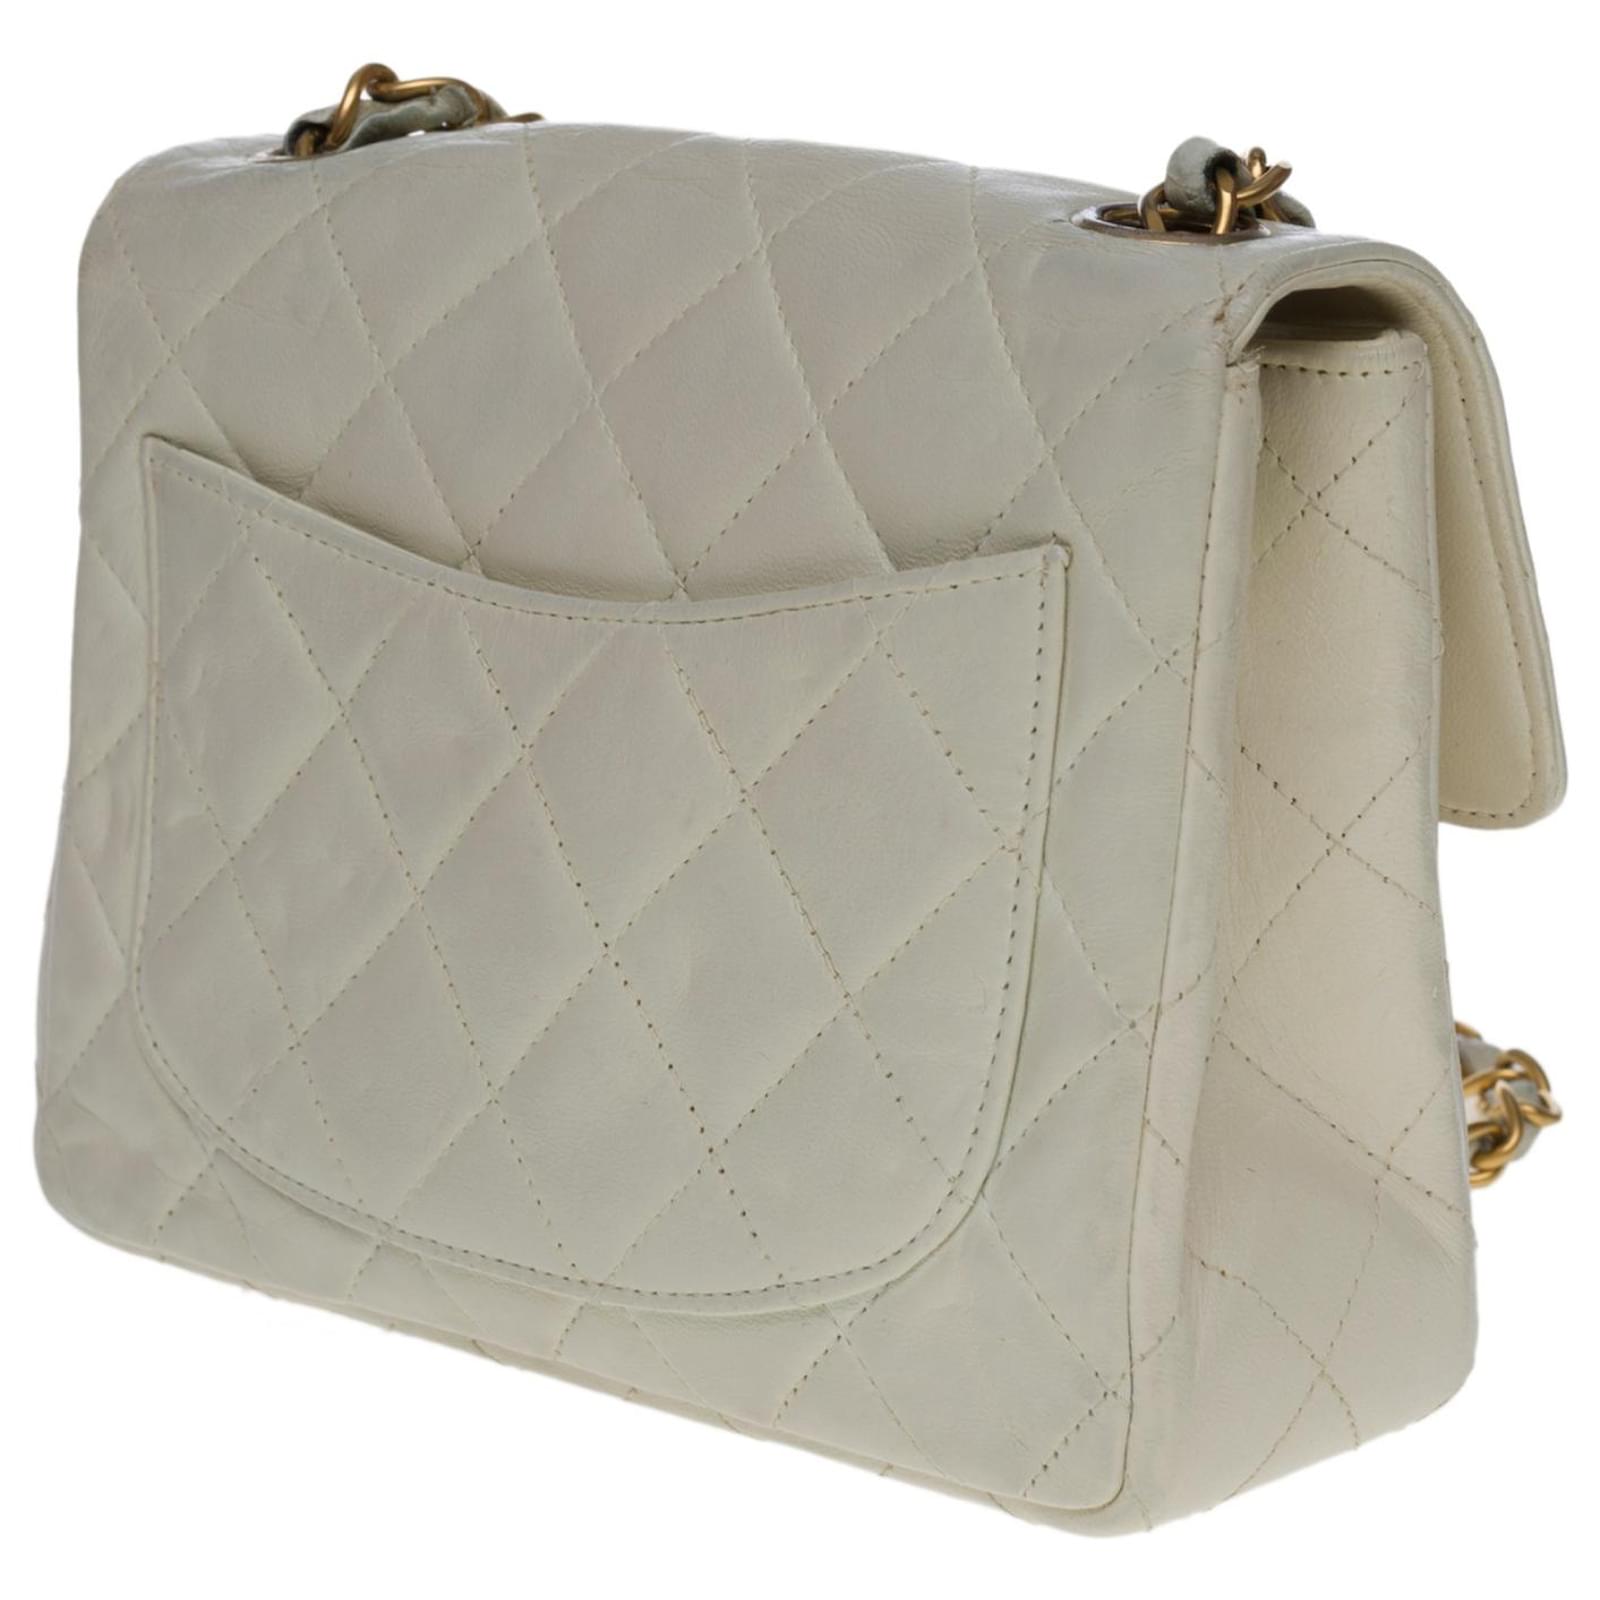 Lovely Chanel Timeless Mini handbag in off-white quilted lambskin,  garniture en métal doré